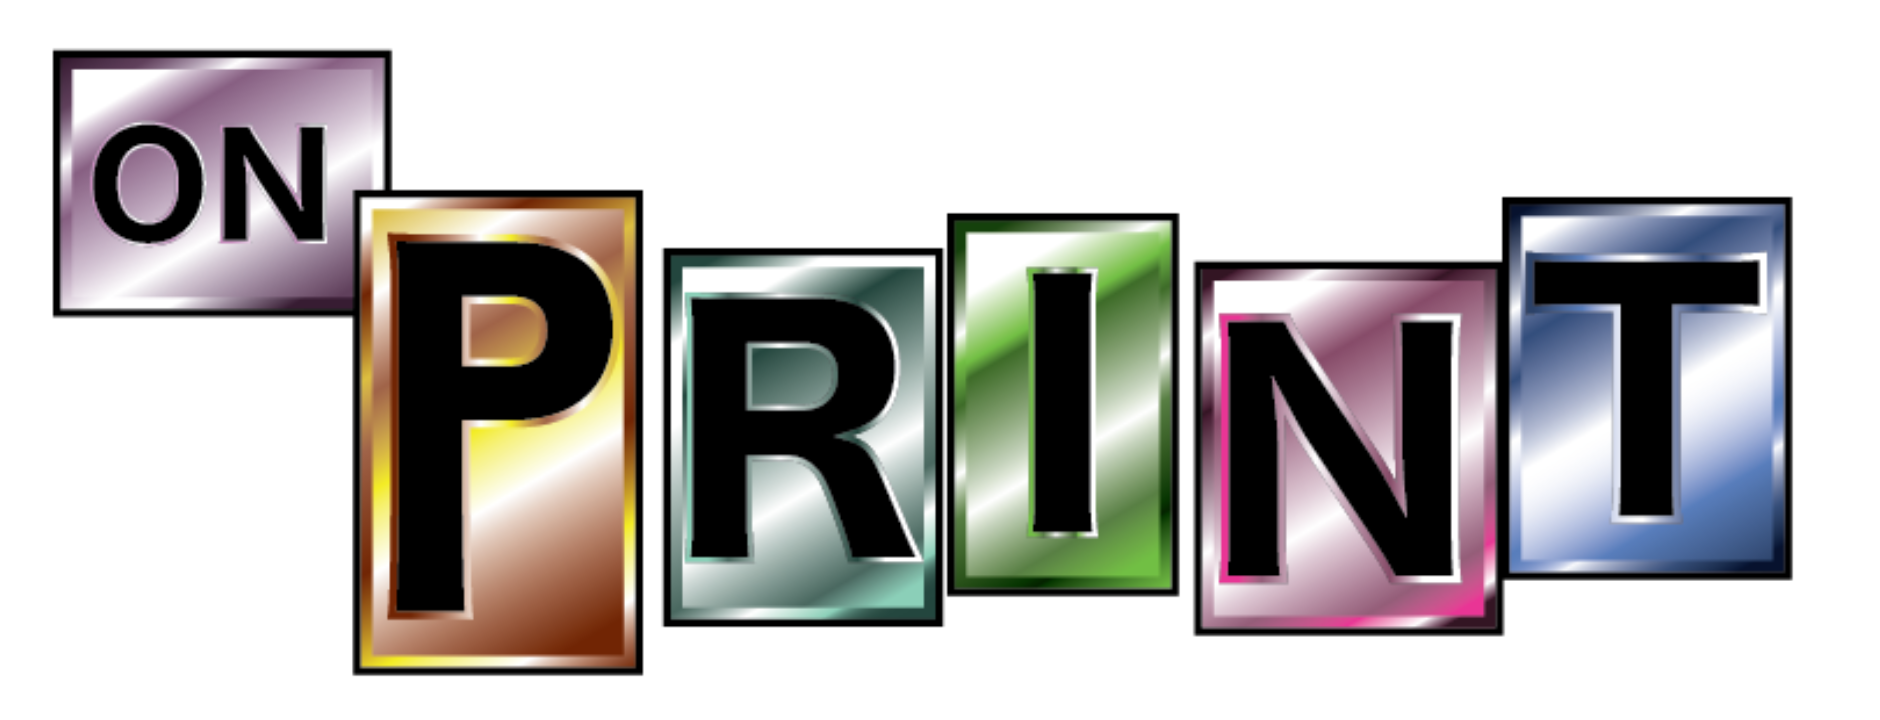 On Print TShirt Company